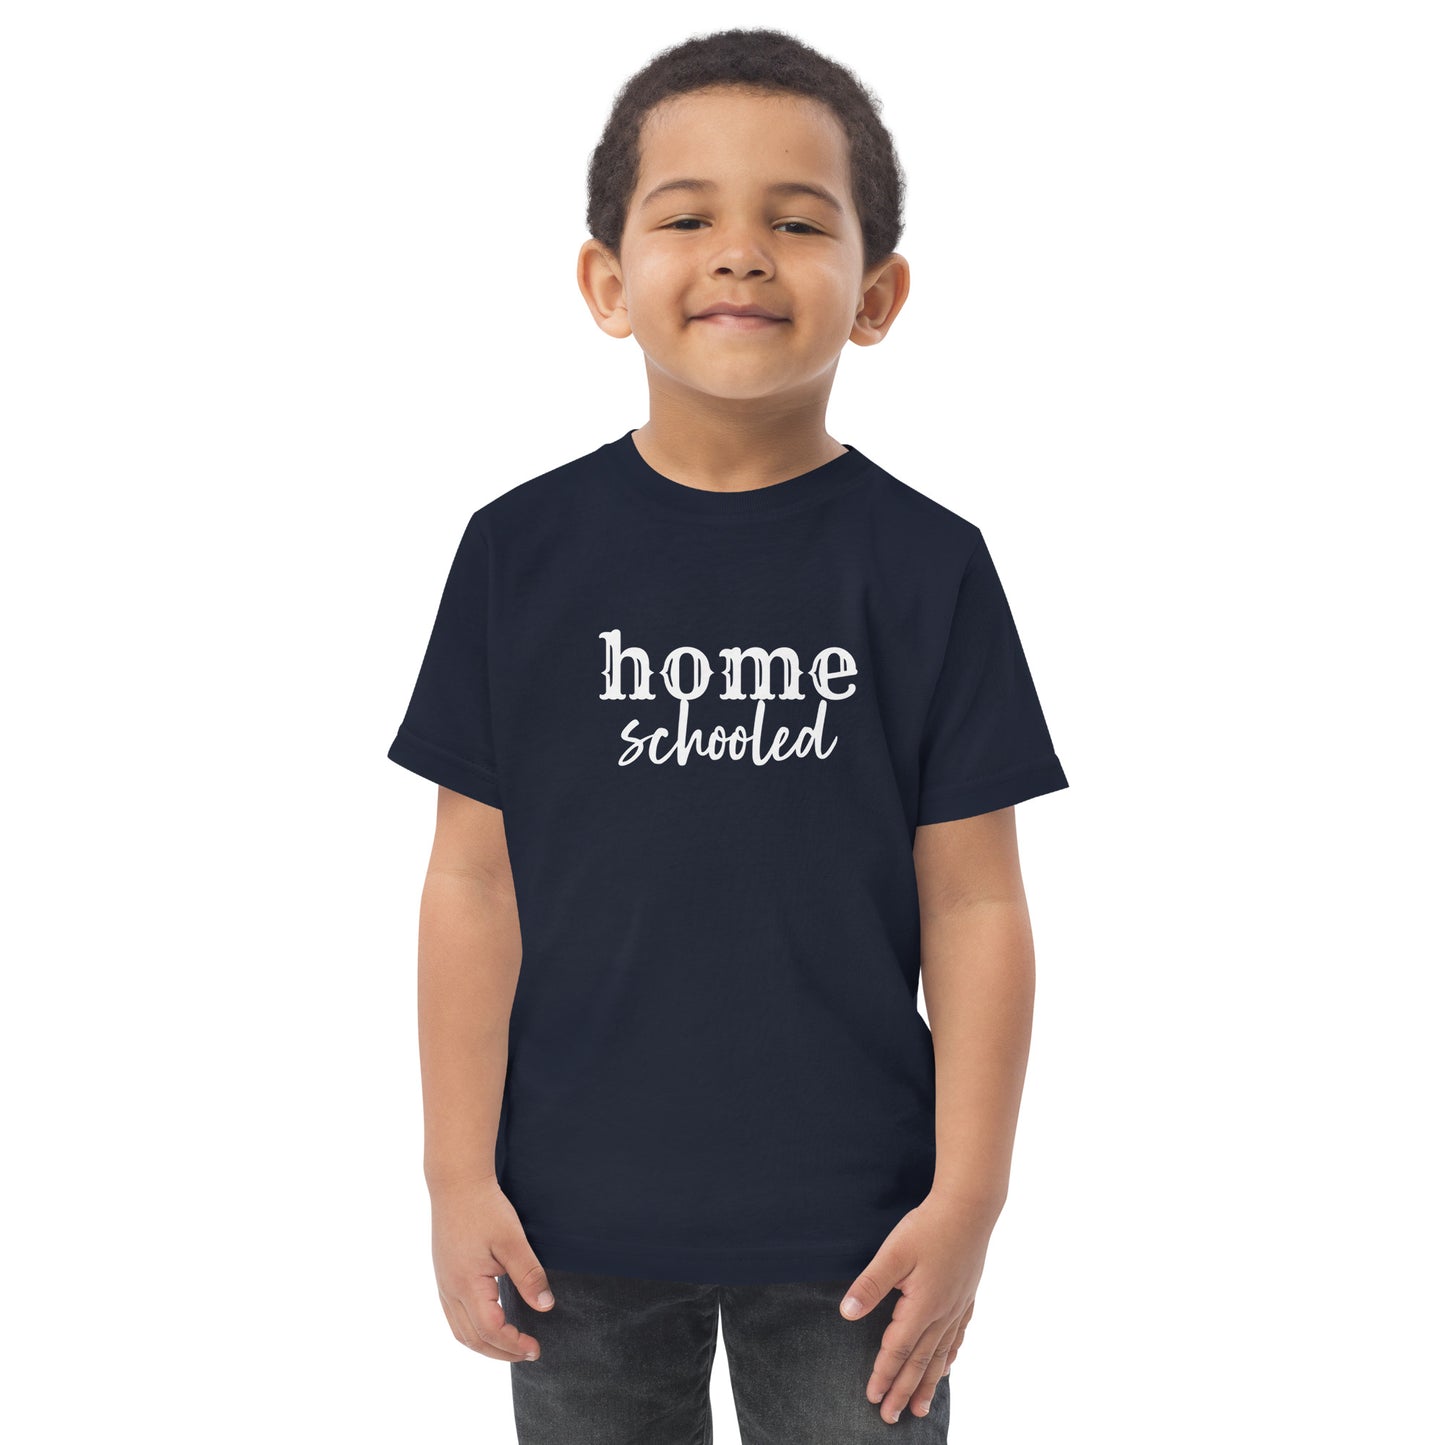 Homeschooled Toddler Short Sleeve T-Shirt Size 2-5/6